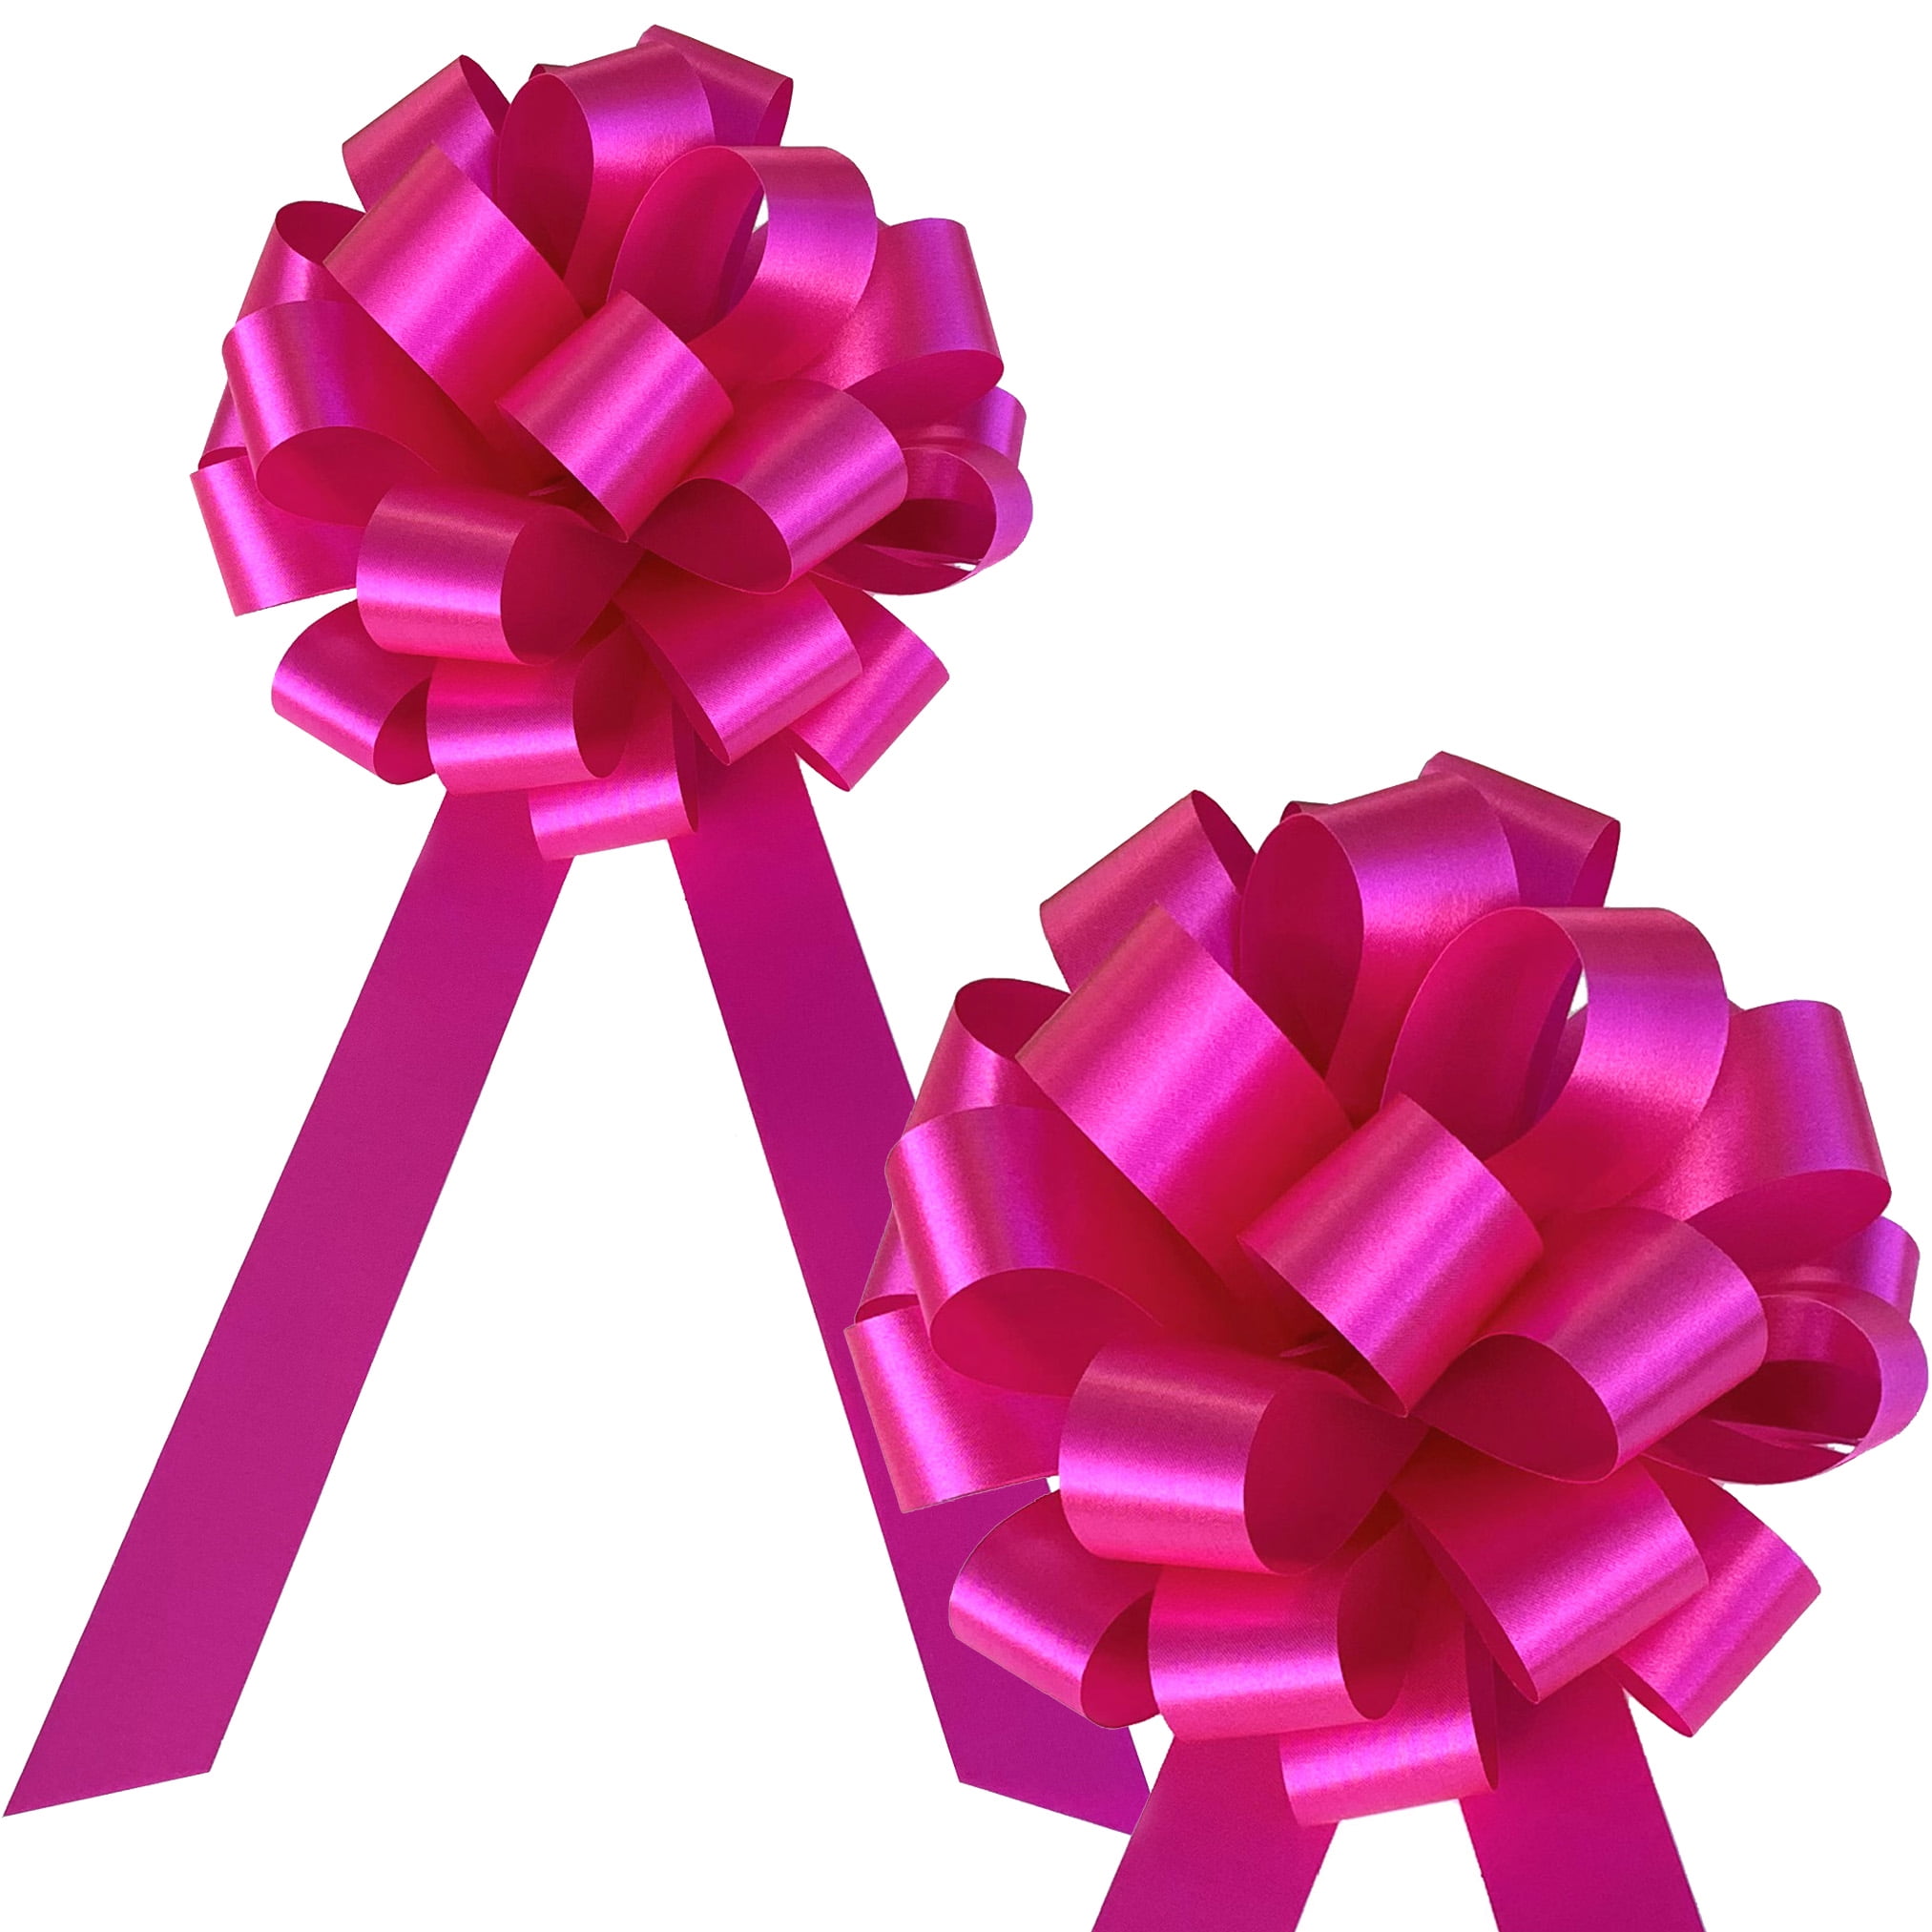 Peel & stick purple grosgrain awareness ribbons - 10 pack